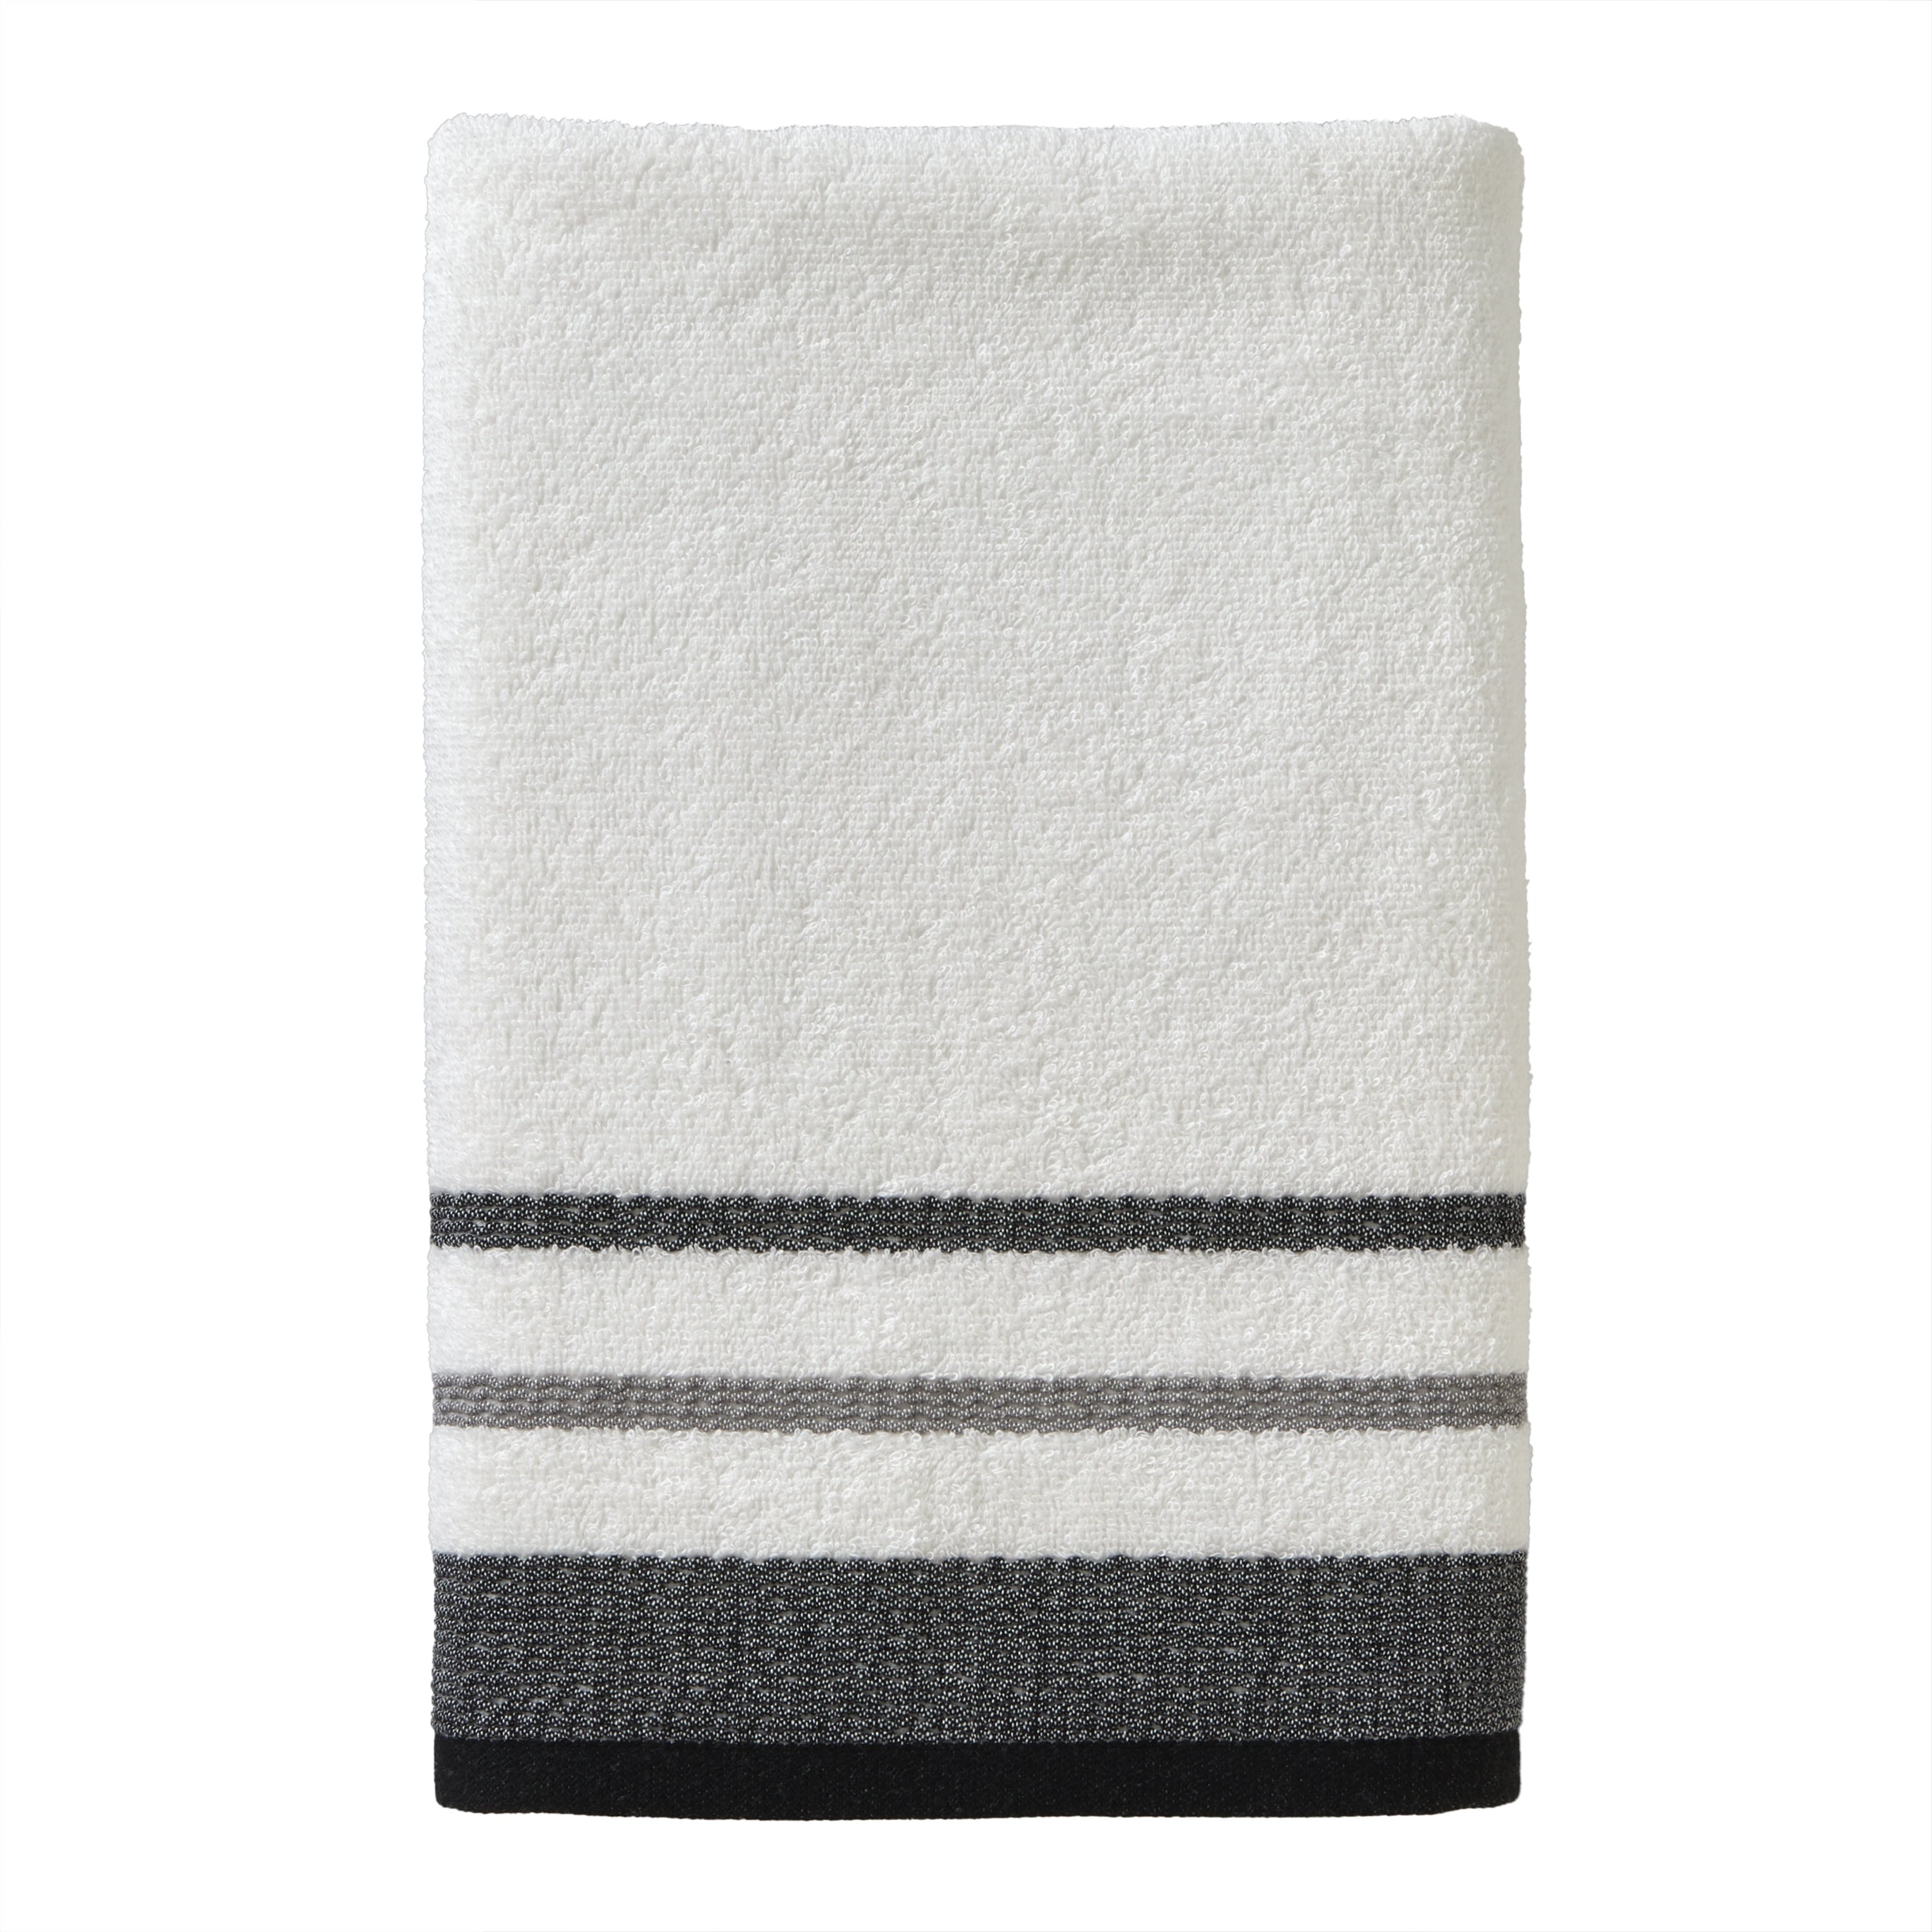 Bunny Bath Hand Towels, Set of 2, Blue White Buffalo Plaid